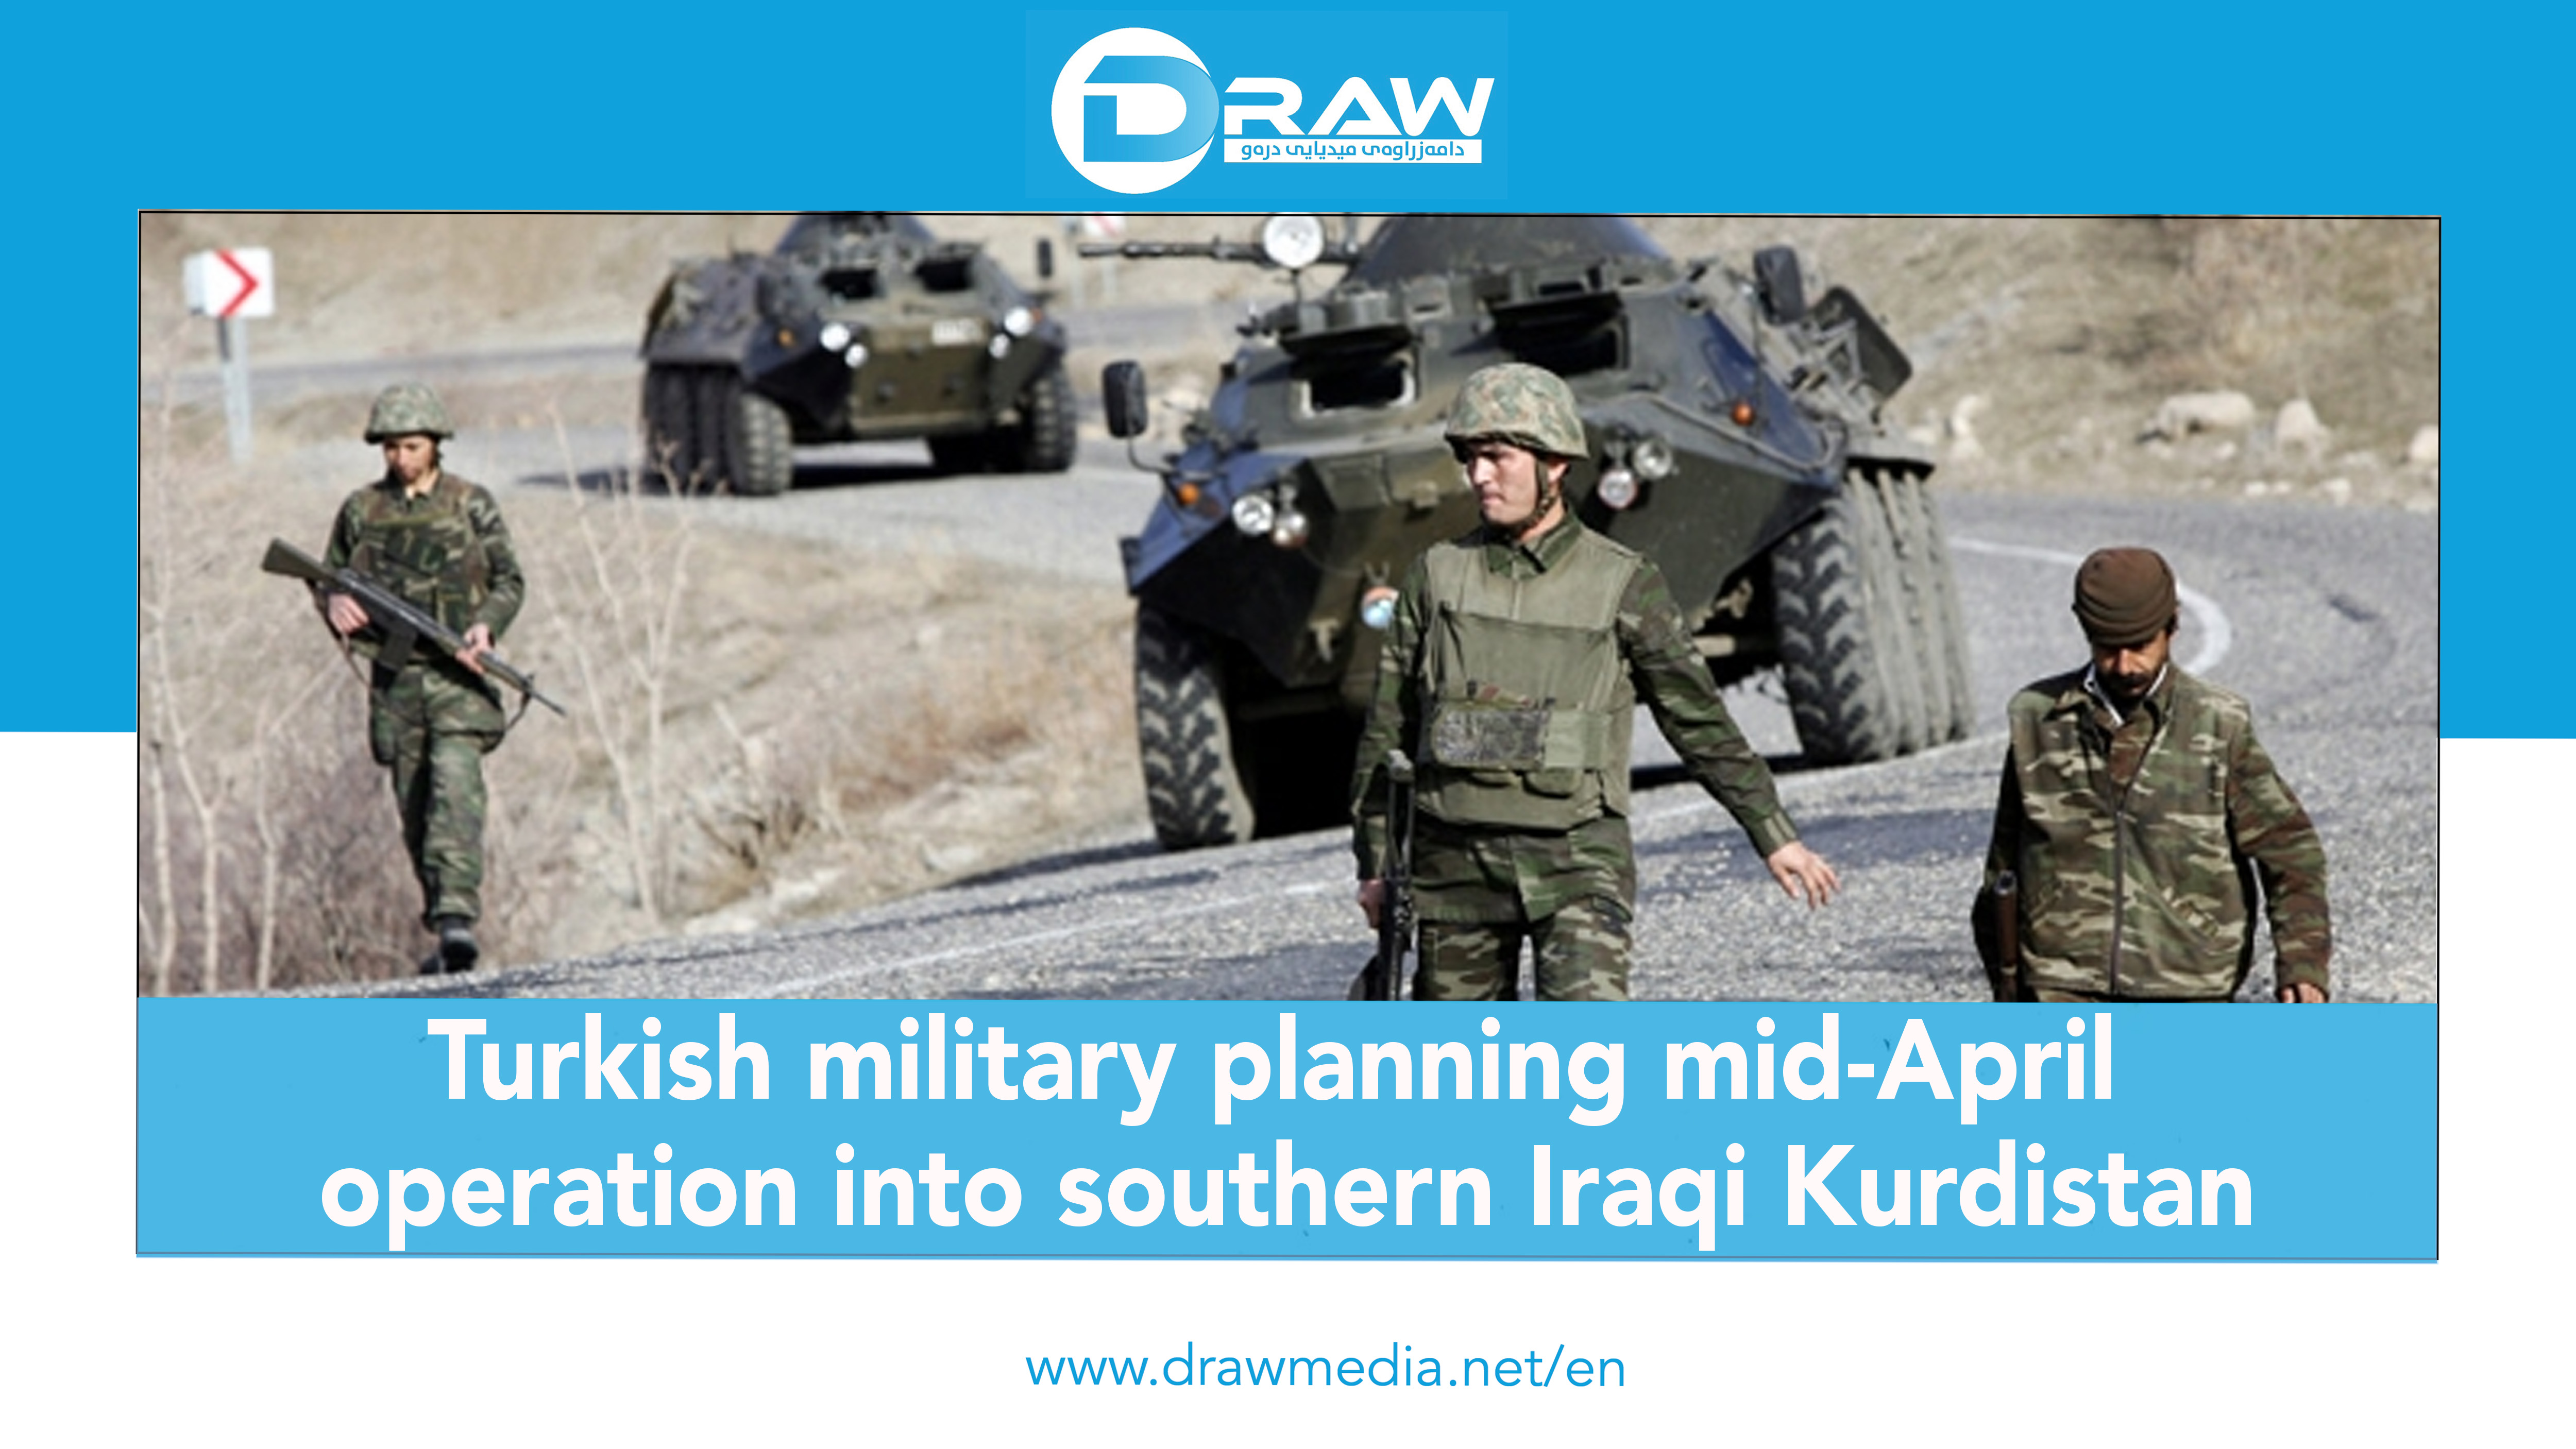 DrawMedia.net / Turkish military planning mid-April operation into southern Iraqi Kurdistan